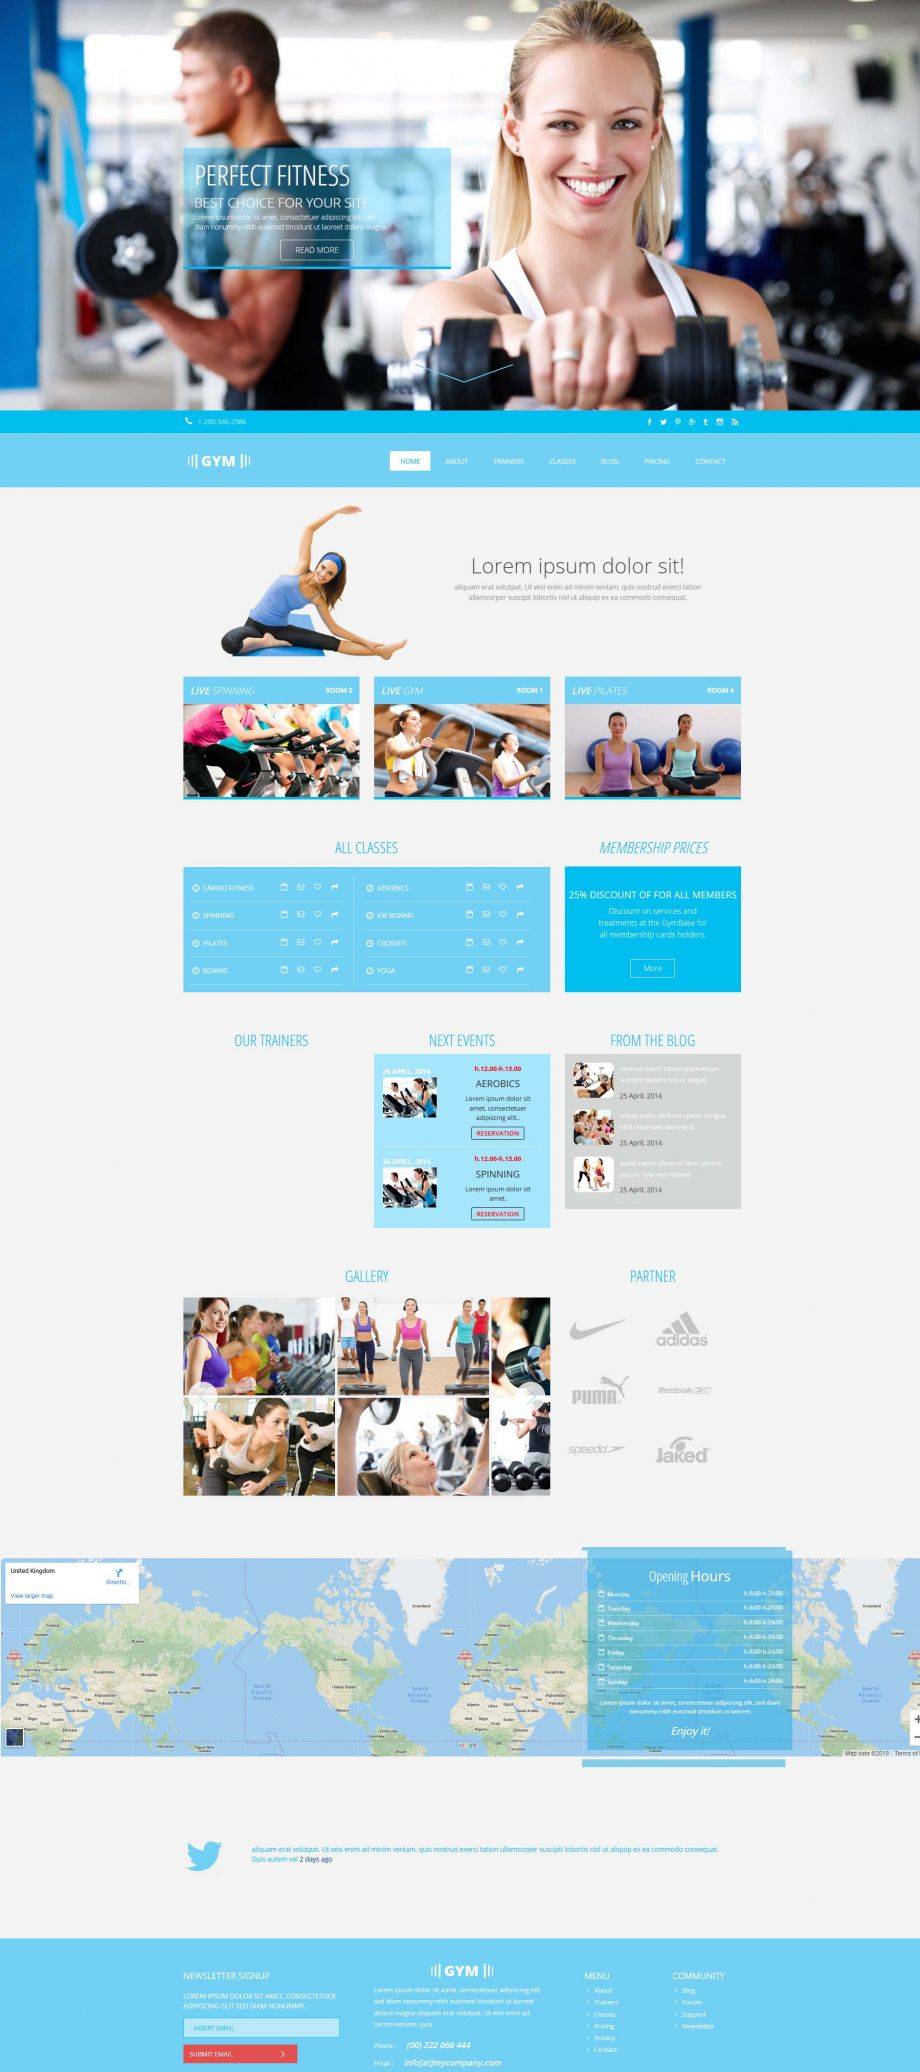 蓝色简洁风格的健身房瑜伽学习整站网站模板